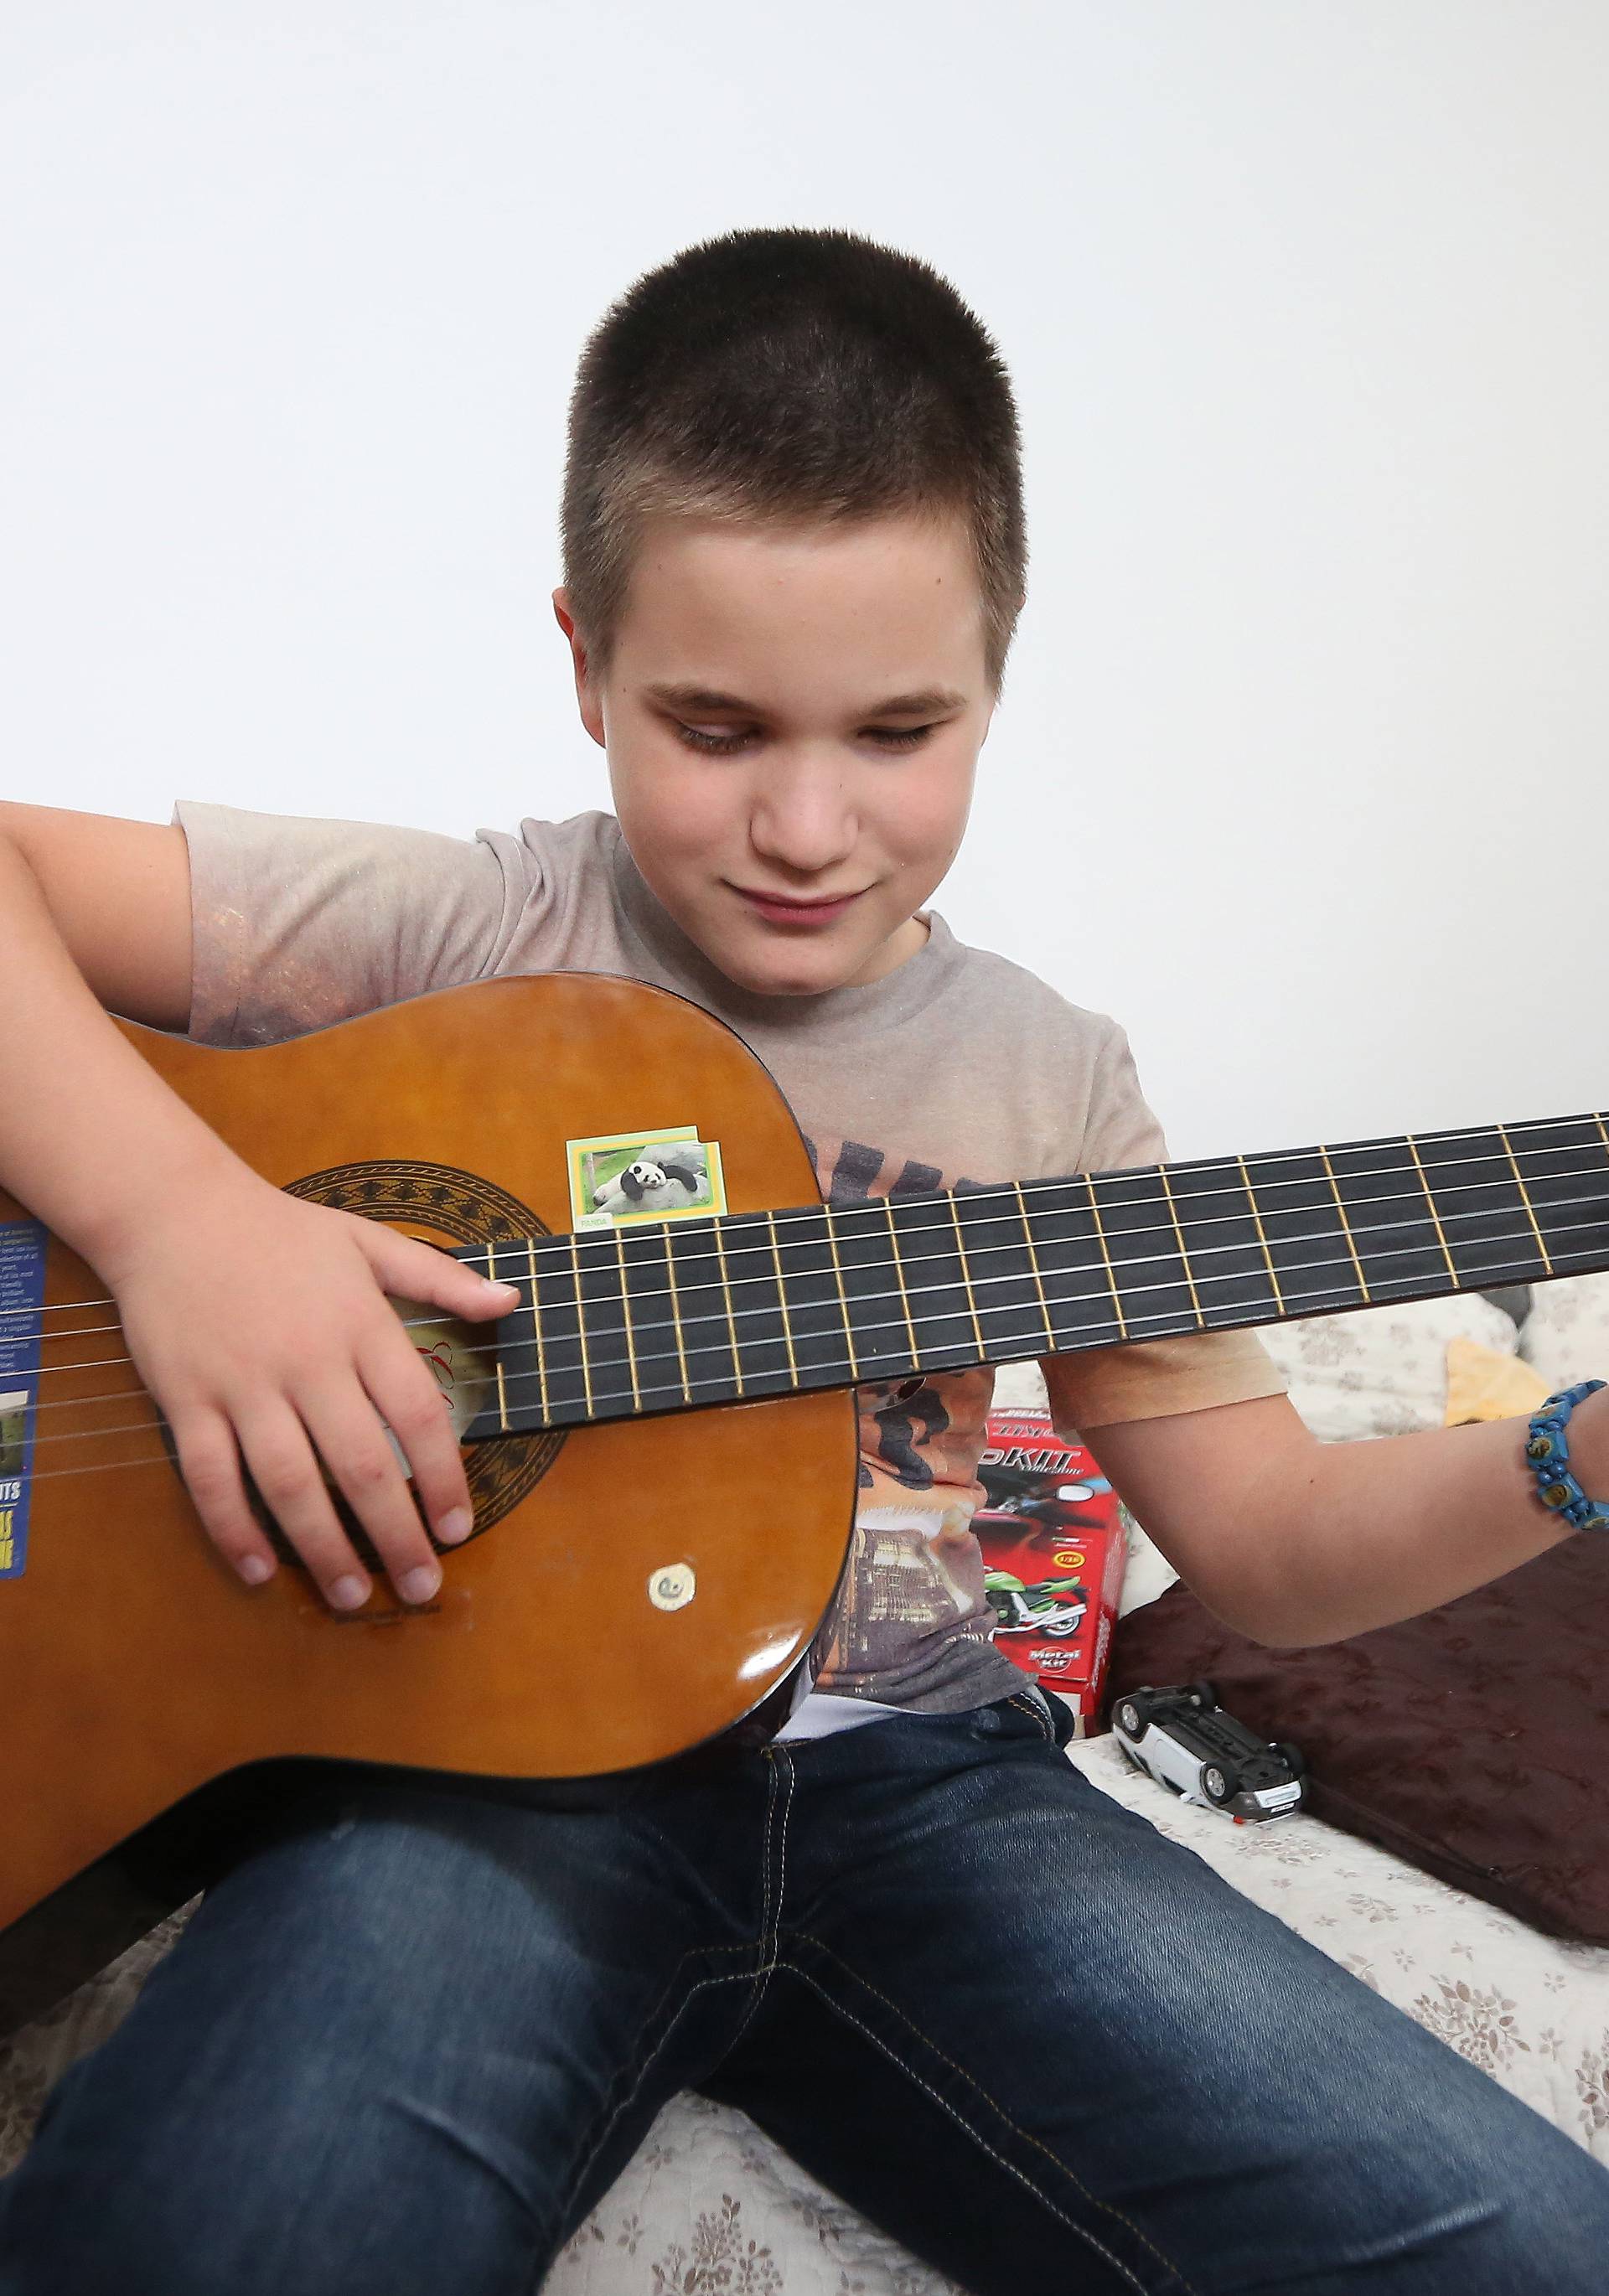 Slijepi Mate (10) je odlikaš i gitarist: 'Pjesma je moja sreća'